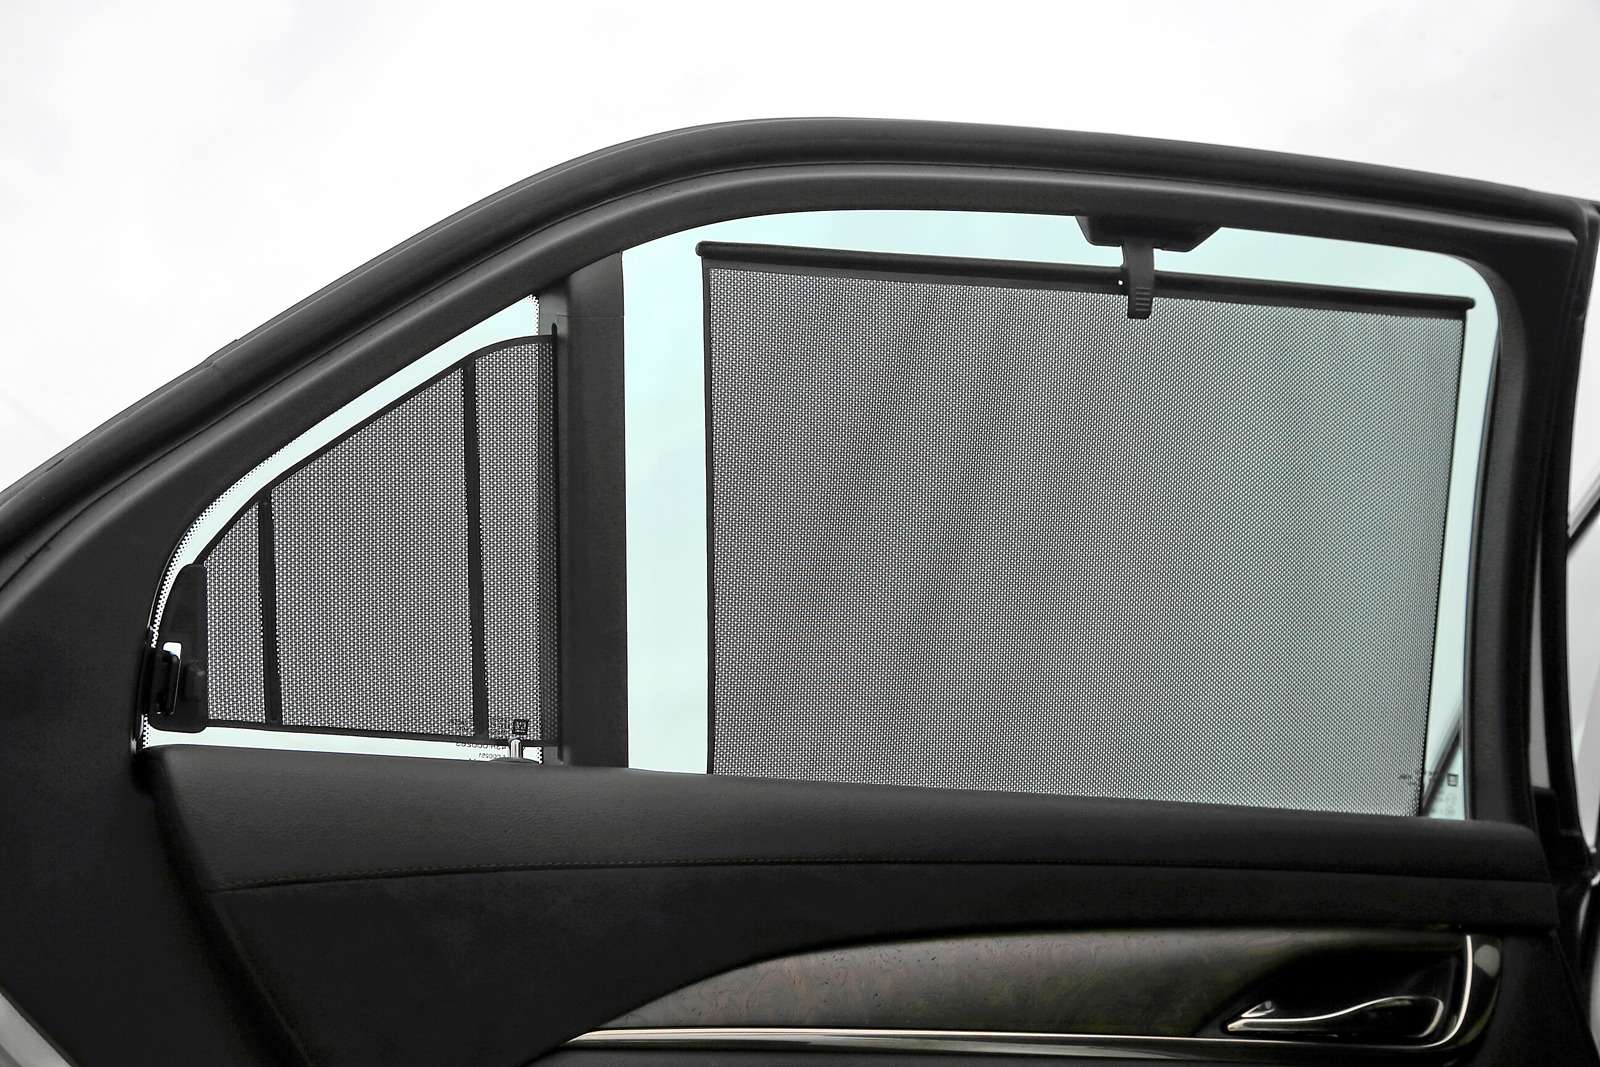 Шторки на передние окна. Штатные шторки для автомобиля w211. Автомобильные шторки на окна. Шторки на боковые стекла автомобиля. Шторки на боковые окна.